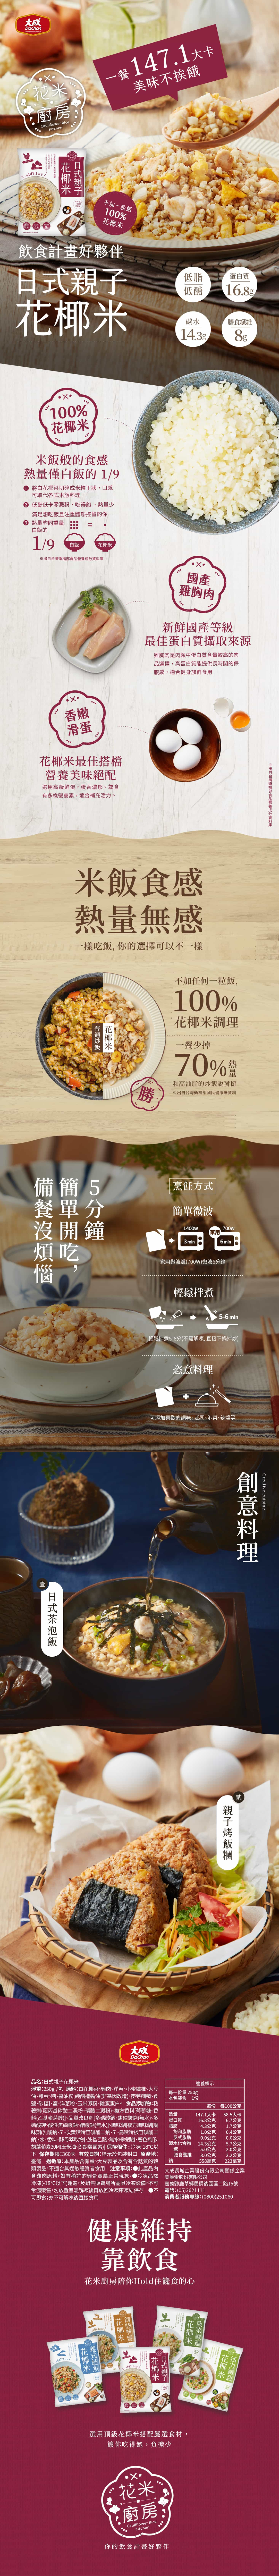 【大成食品】花米廚房花椰米即食調理包任選250g 花椰菜米